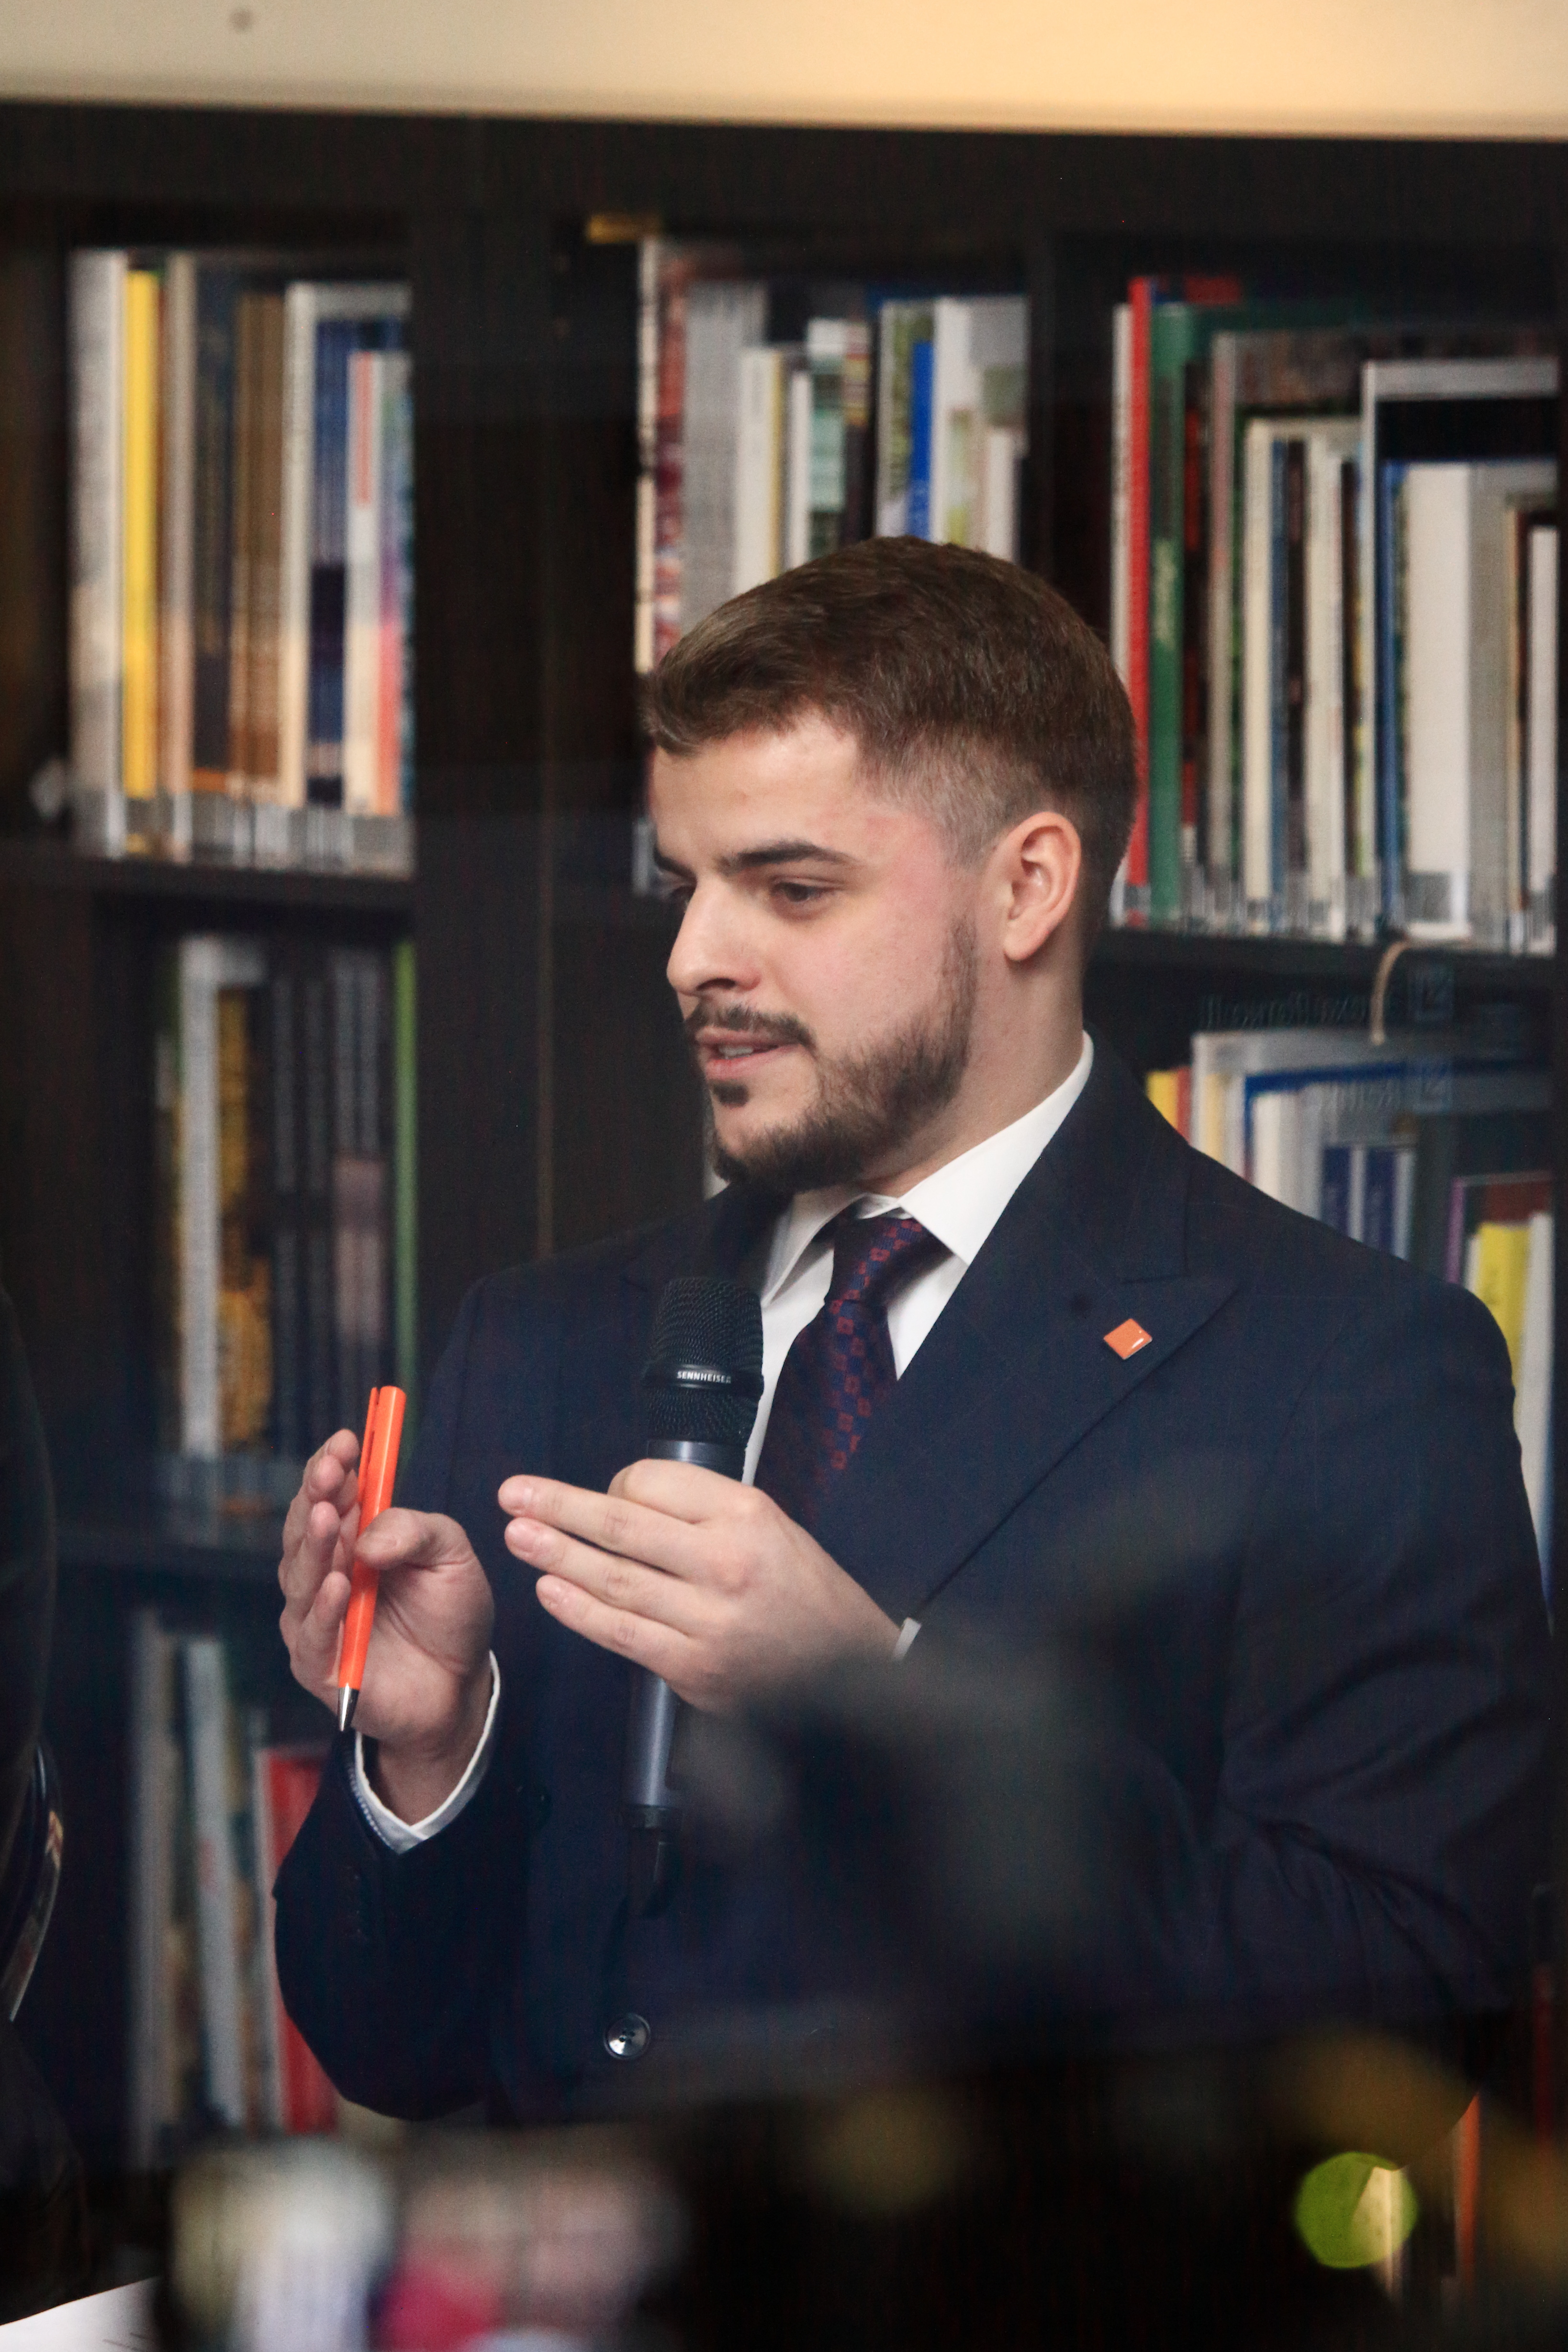  "Vērtējam darbus un solījumus" cikla diskusija “Kā nosargāt demokrātiskās vērtības?” Daugavpilī. 